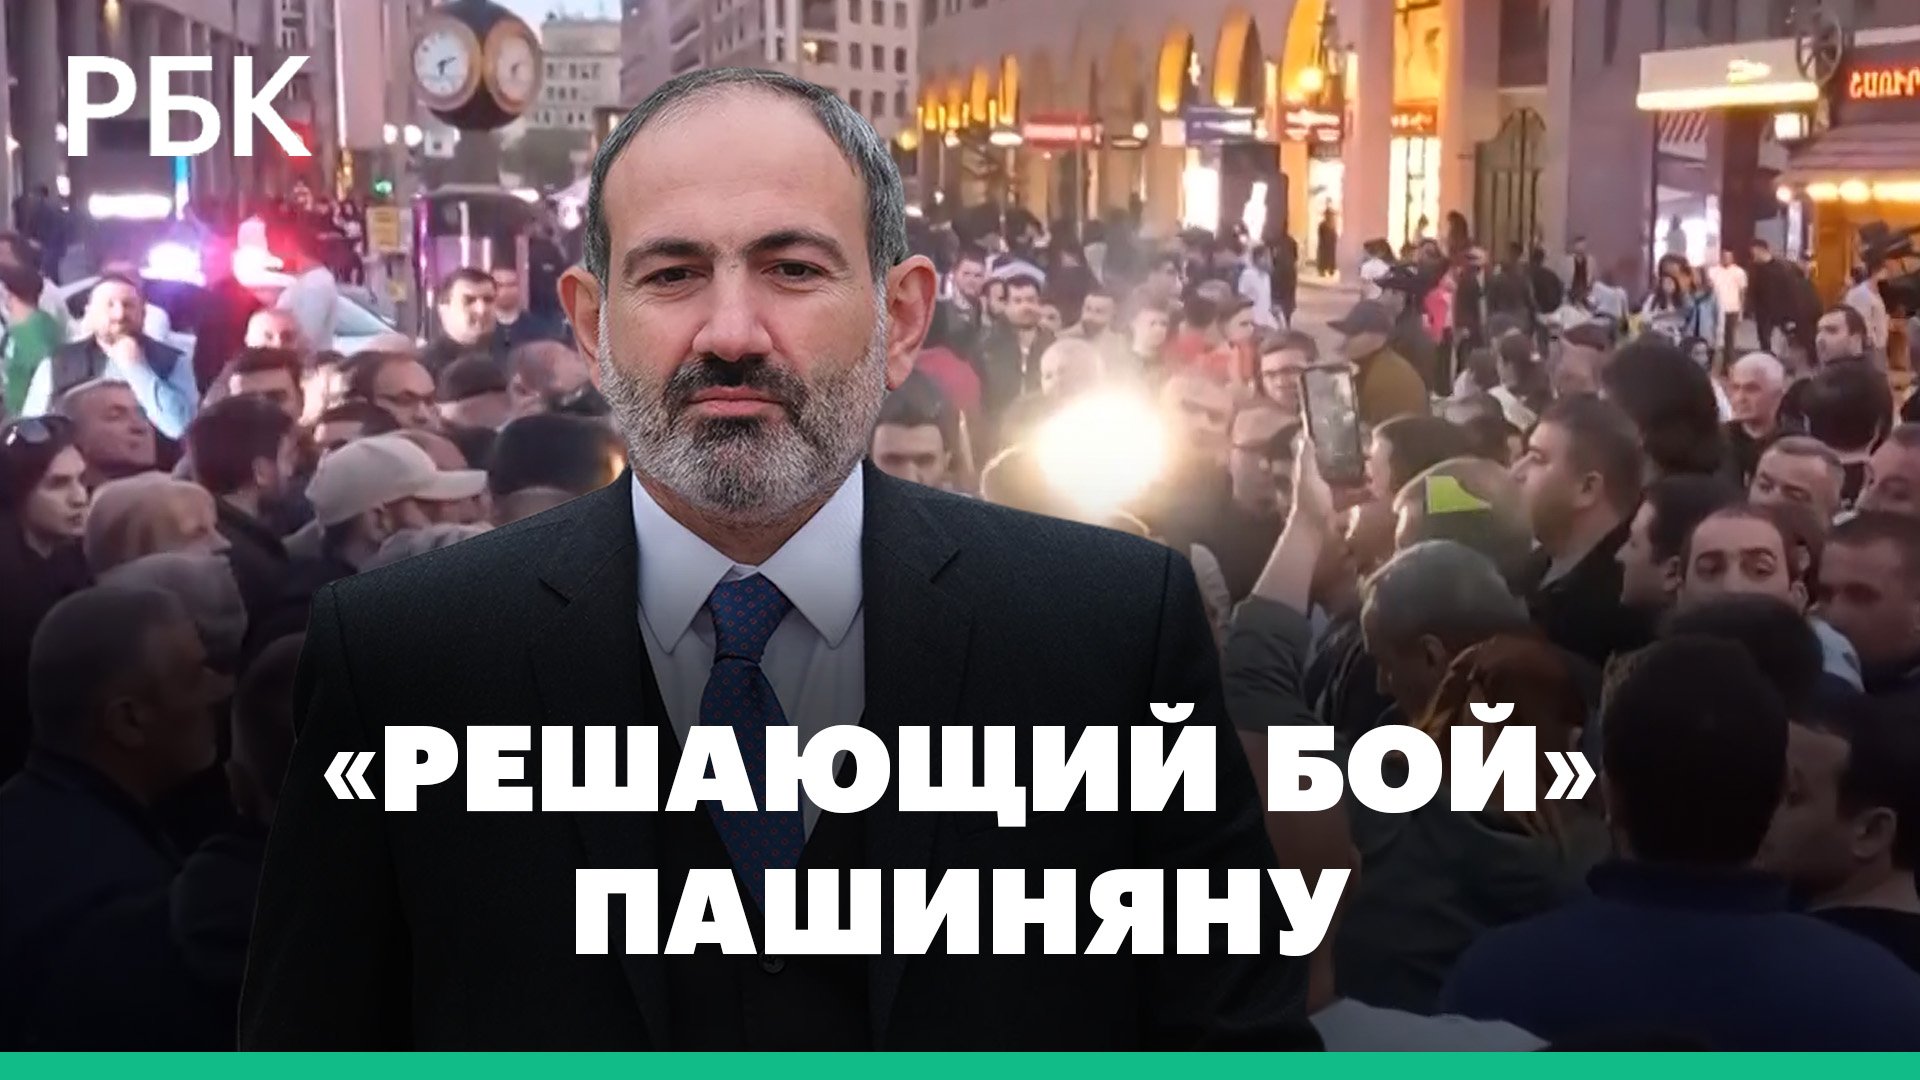 Оппозиция заявила, что даст «решающий бой» Пашиняну 1 мая на антиправительственной демонстрации